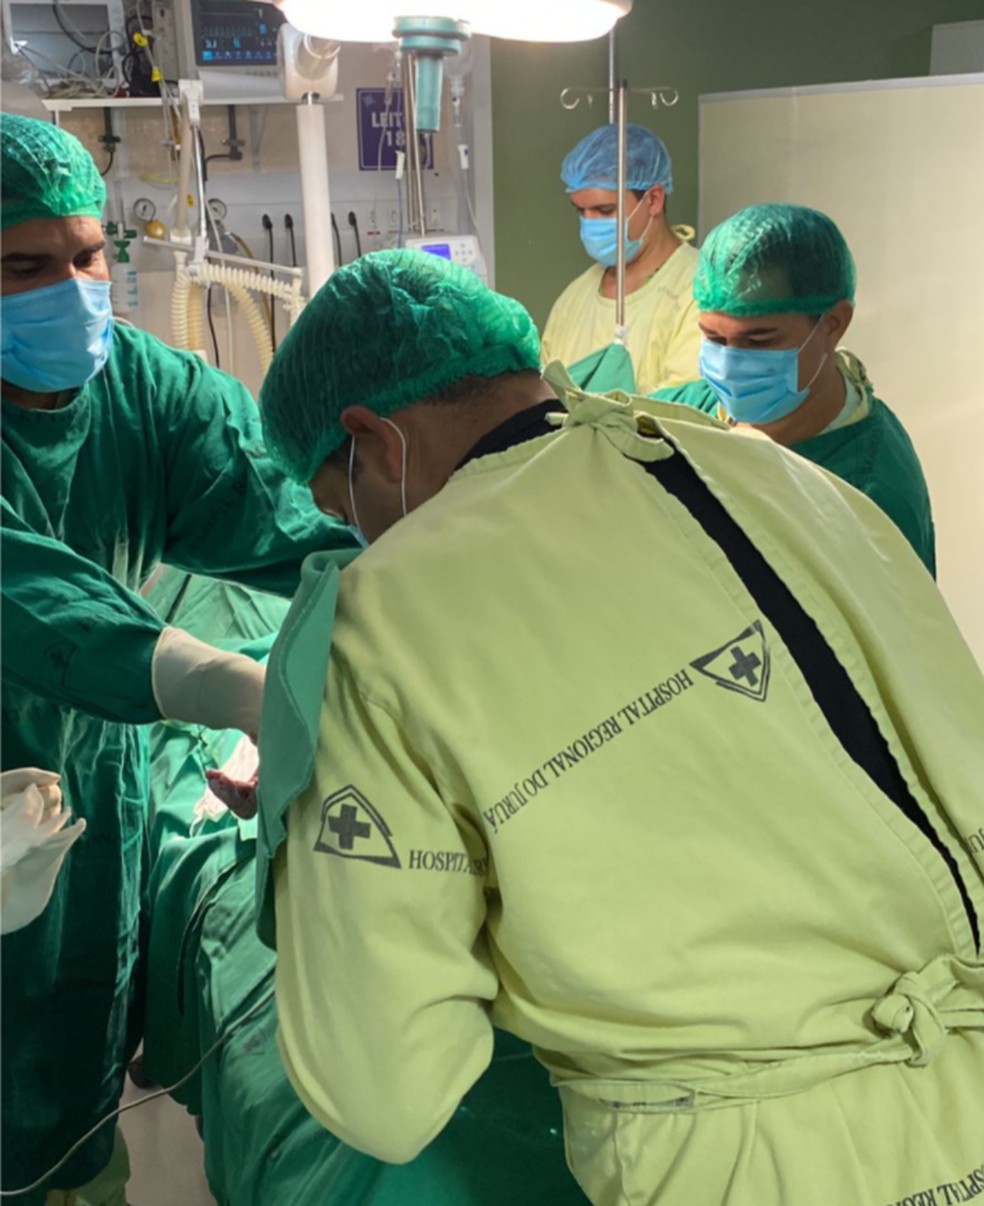 Grávida com Covid-19 é submetida a cesariana de emergência em UTI do Hospital no Acre — Foto: Eliana Farias/Arquivo pessoal